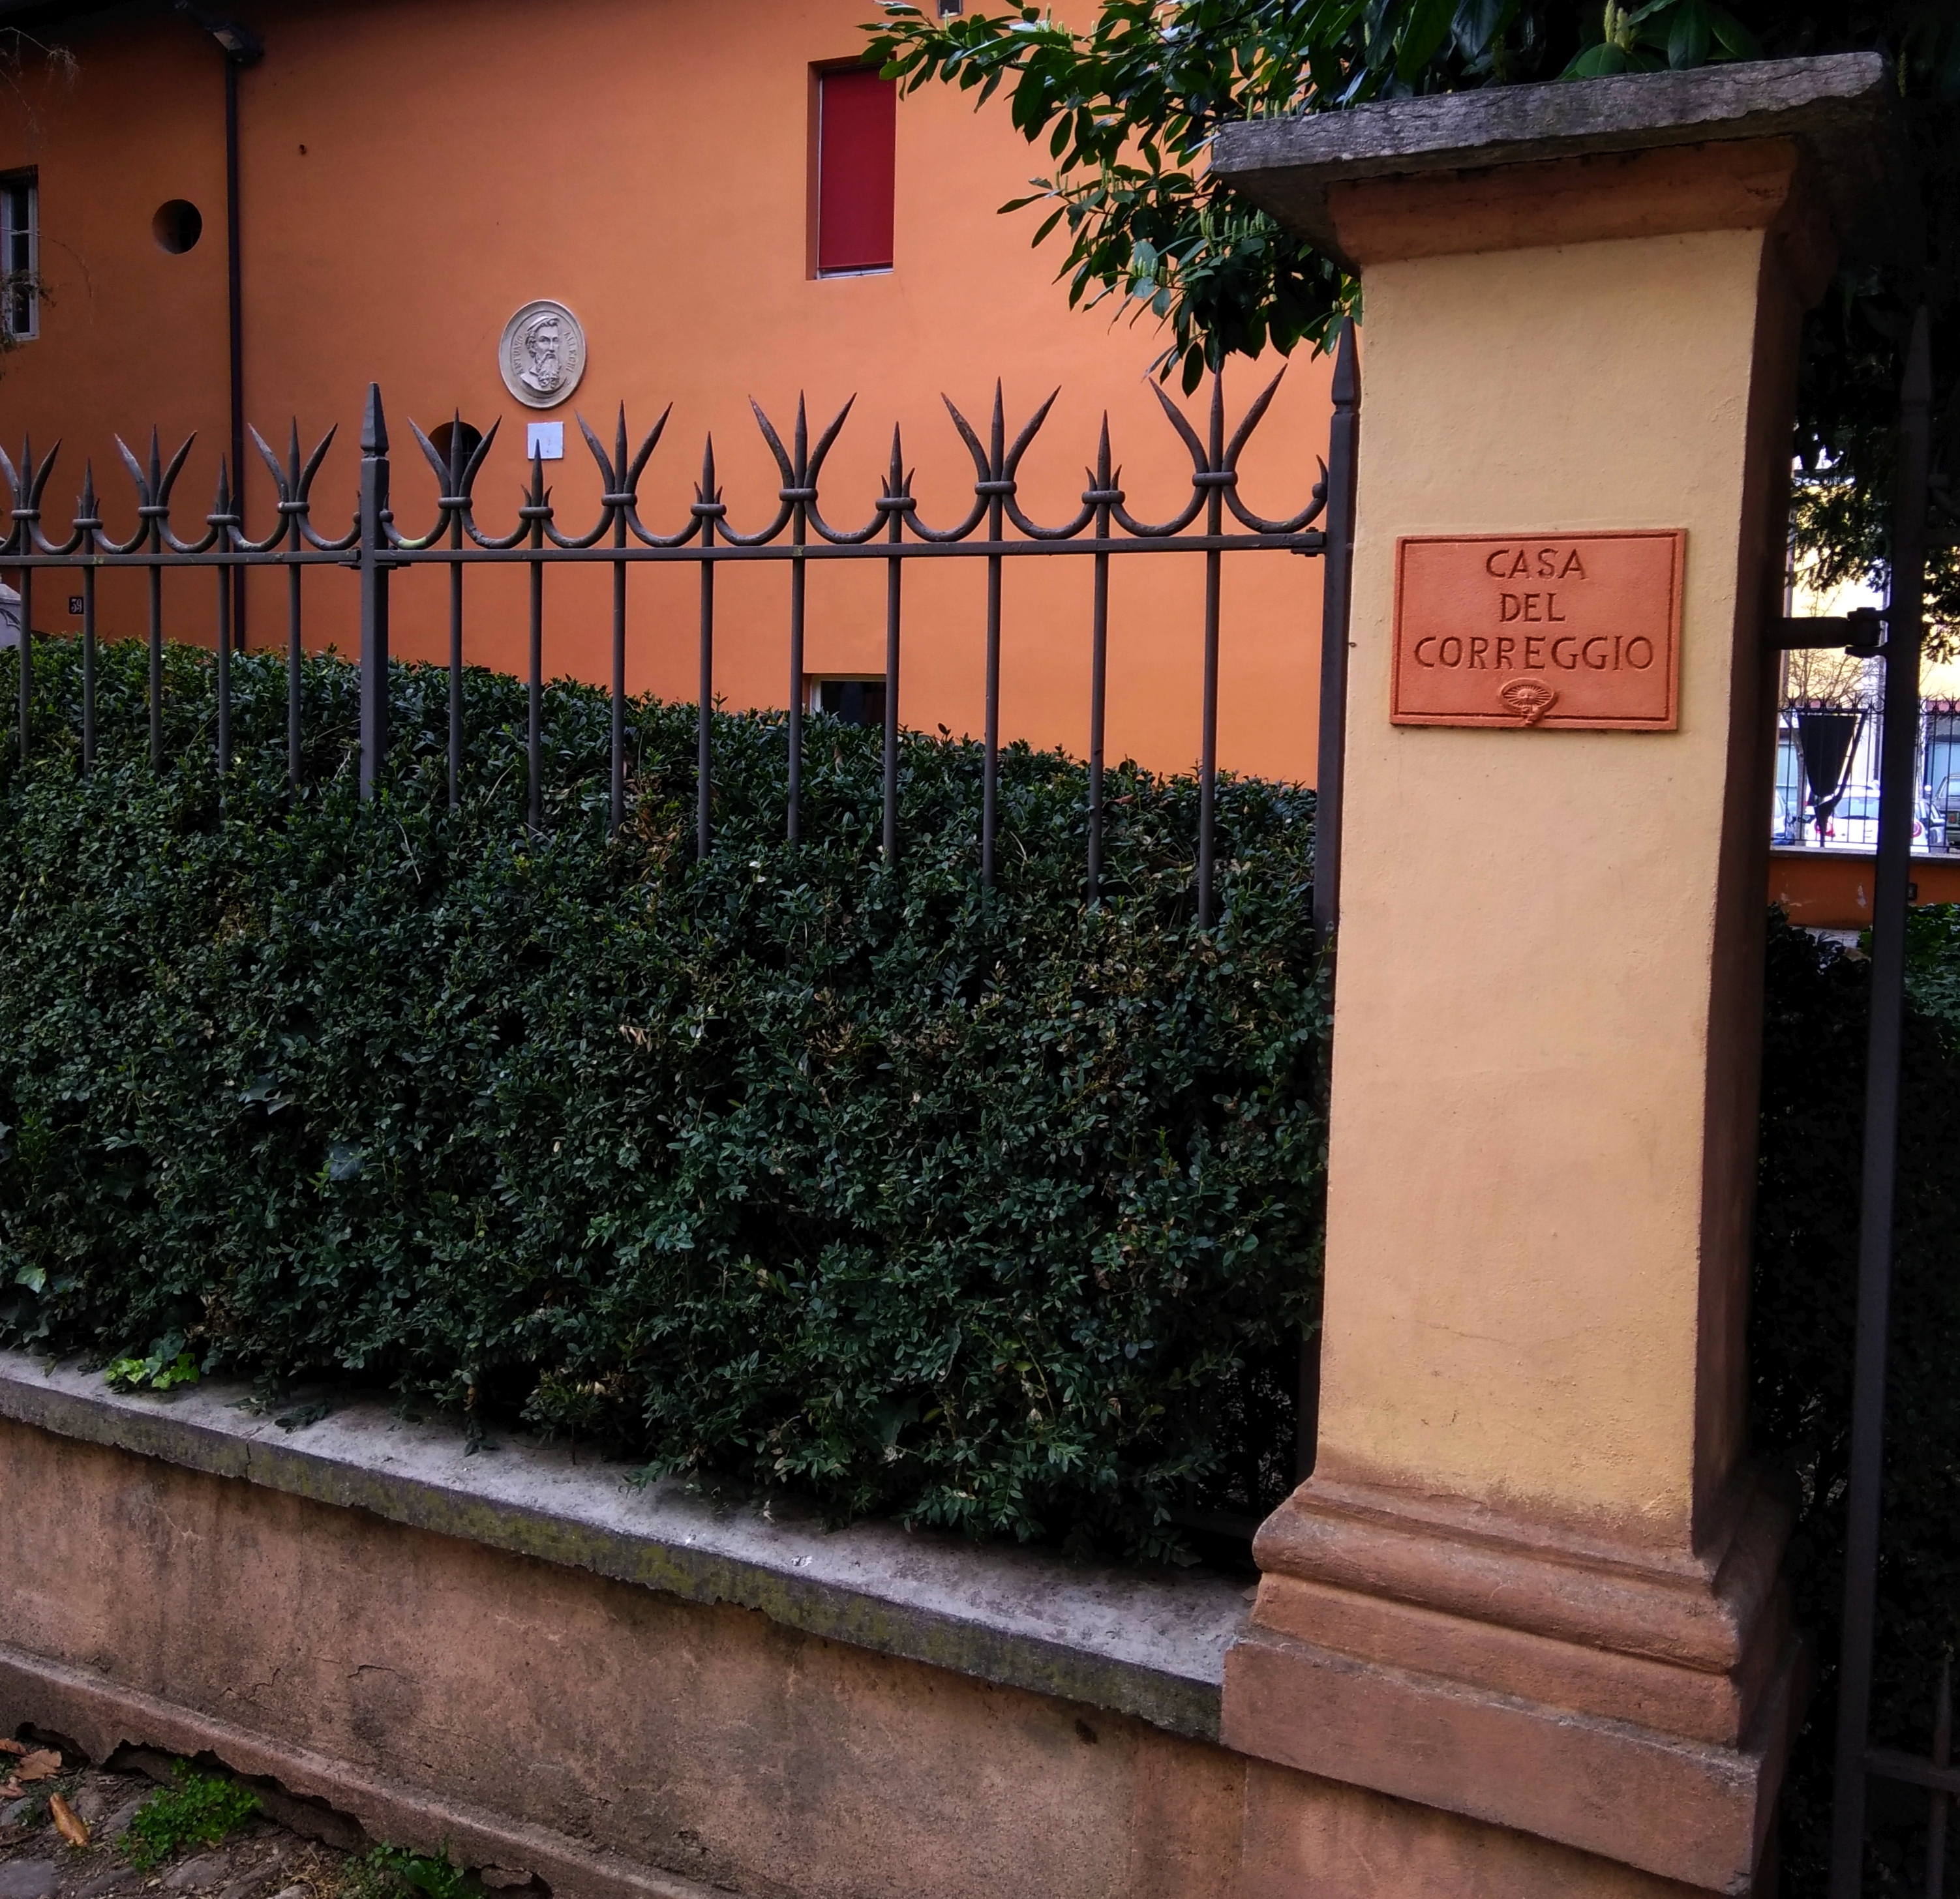 Casa del Correggio - Correggio Art Home